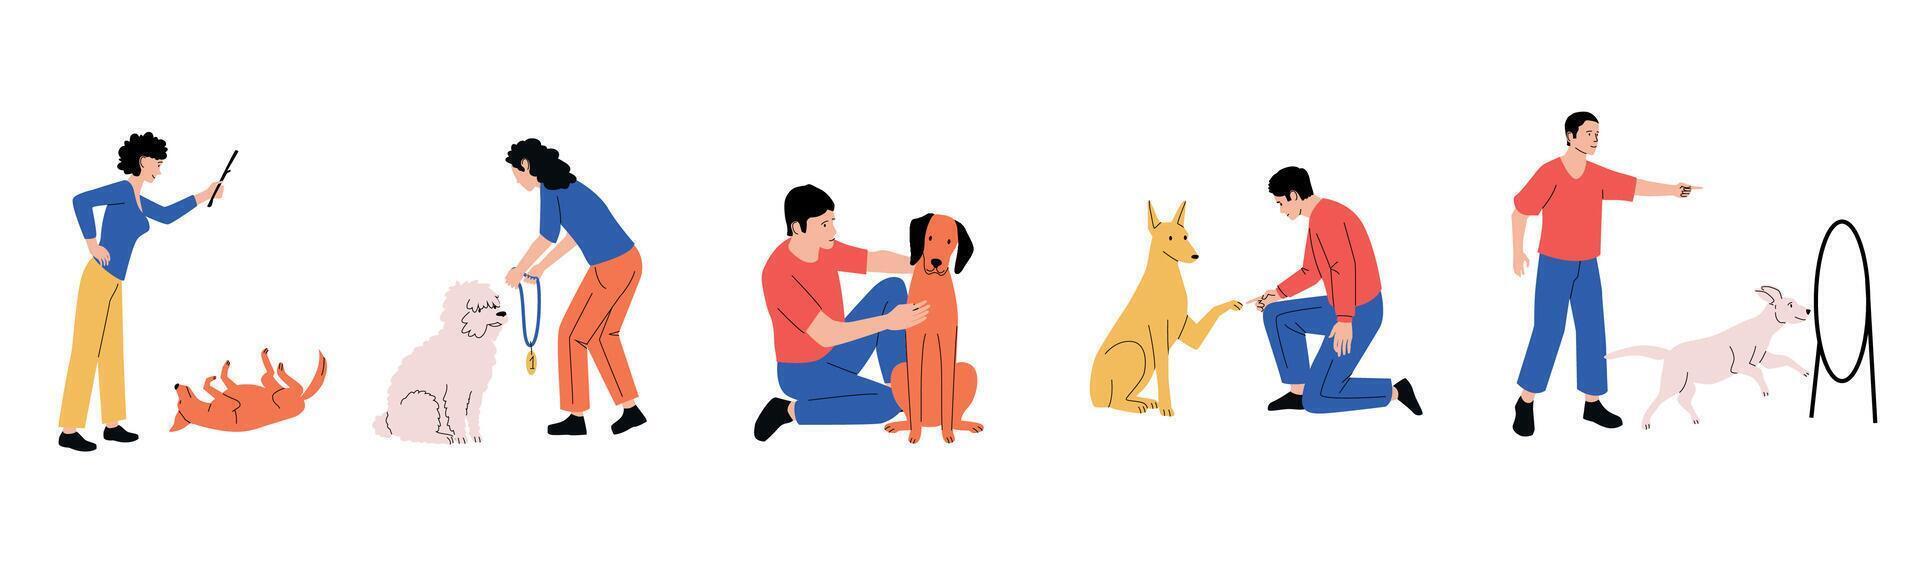 garabatear perro dueños dibujos animados linda perrito desafío bosquejo, mano dibujado gracioso animal mascotas caracteres con Niños y chicas, perro adopción concepto. vector ilustración